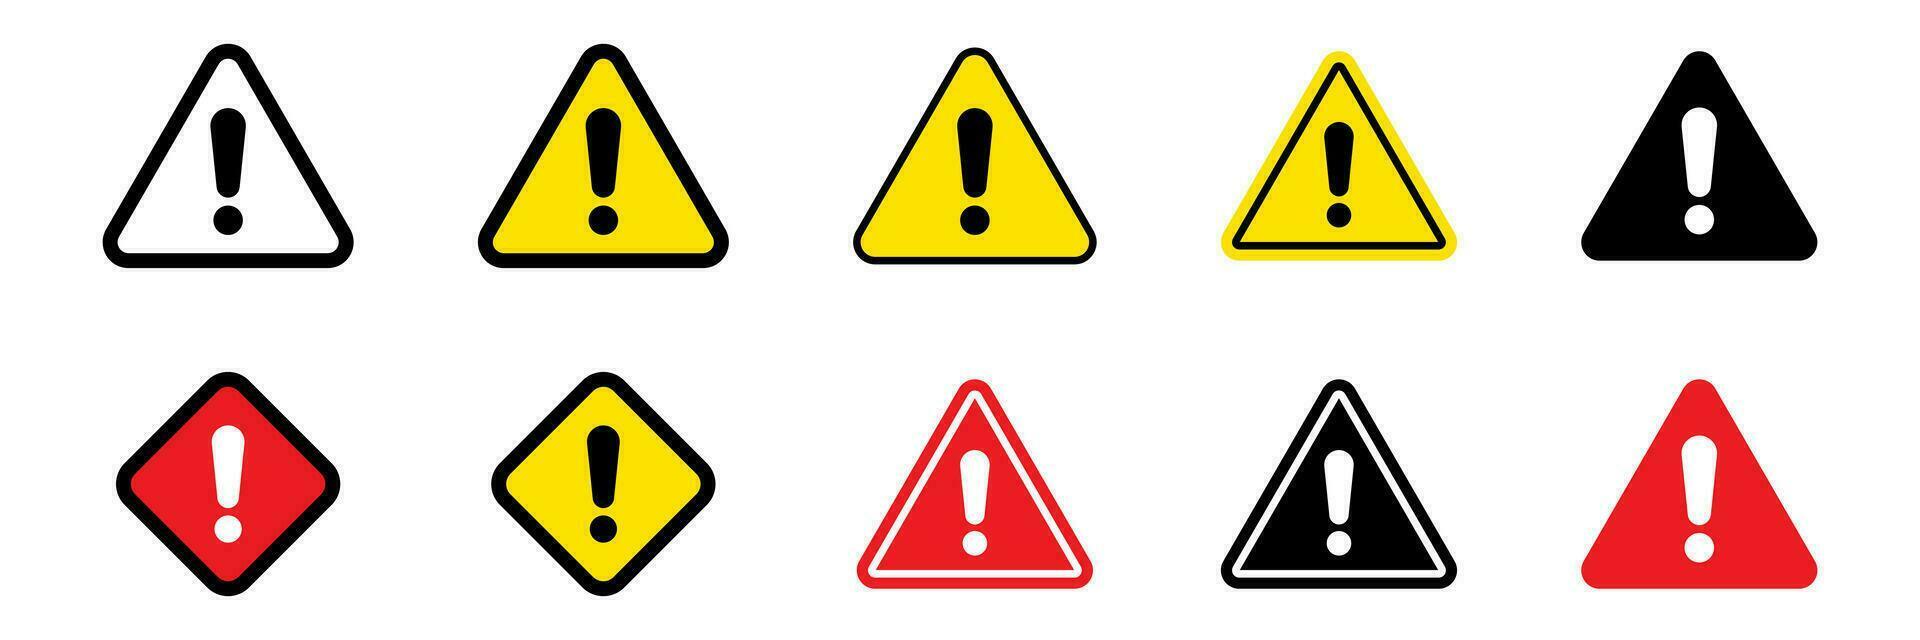 Danger sign, warning sign, attention sign. Danger icon, warning icon, attention icon. vector